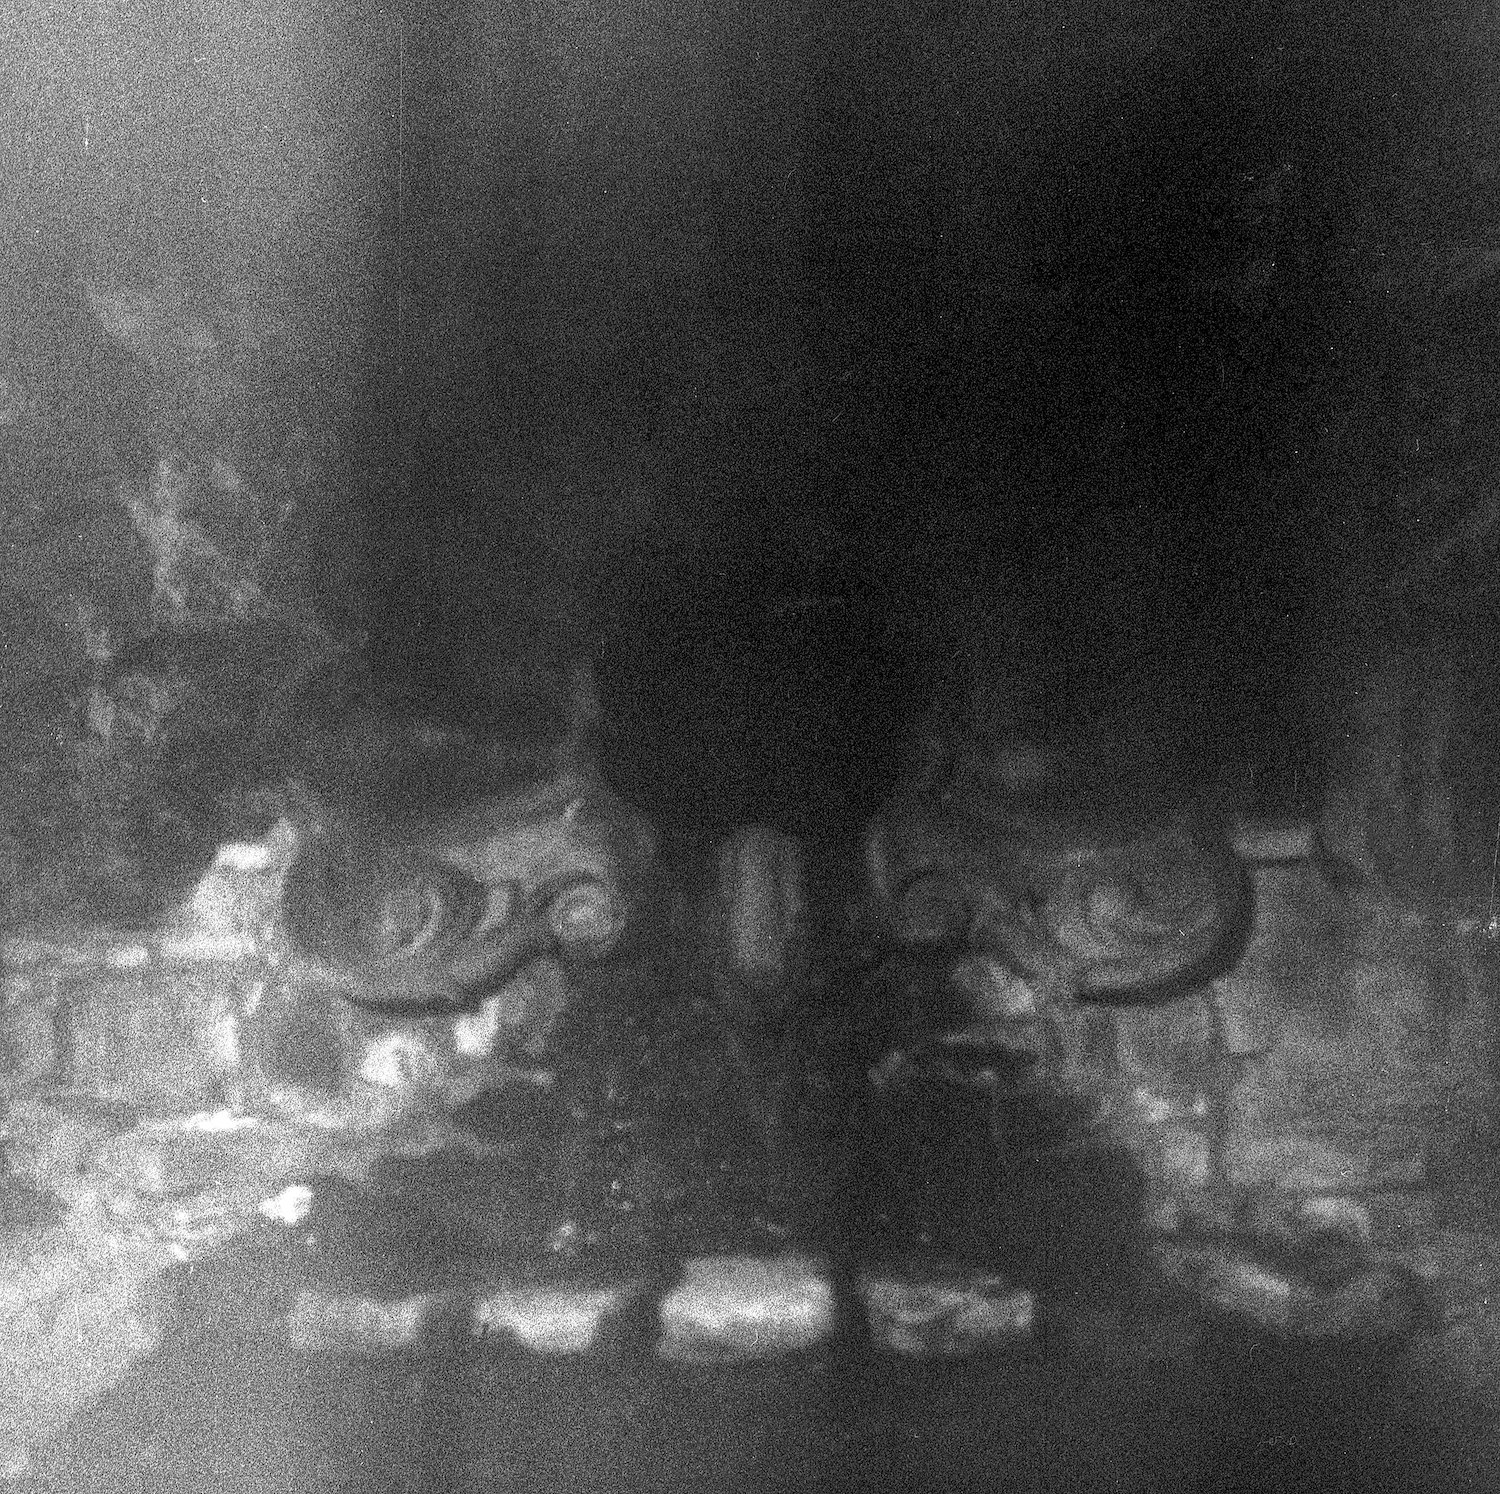 “Fountain Portal” by Maryssa Rose Chavez, 2022 black and white film image taken near San Antonio, Texas.